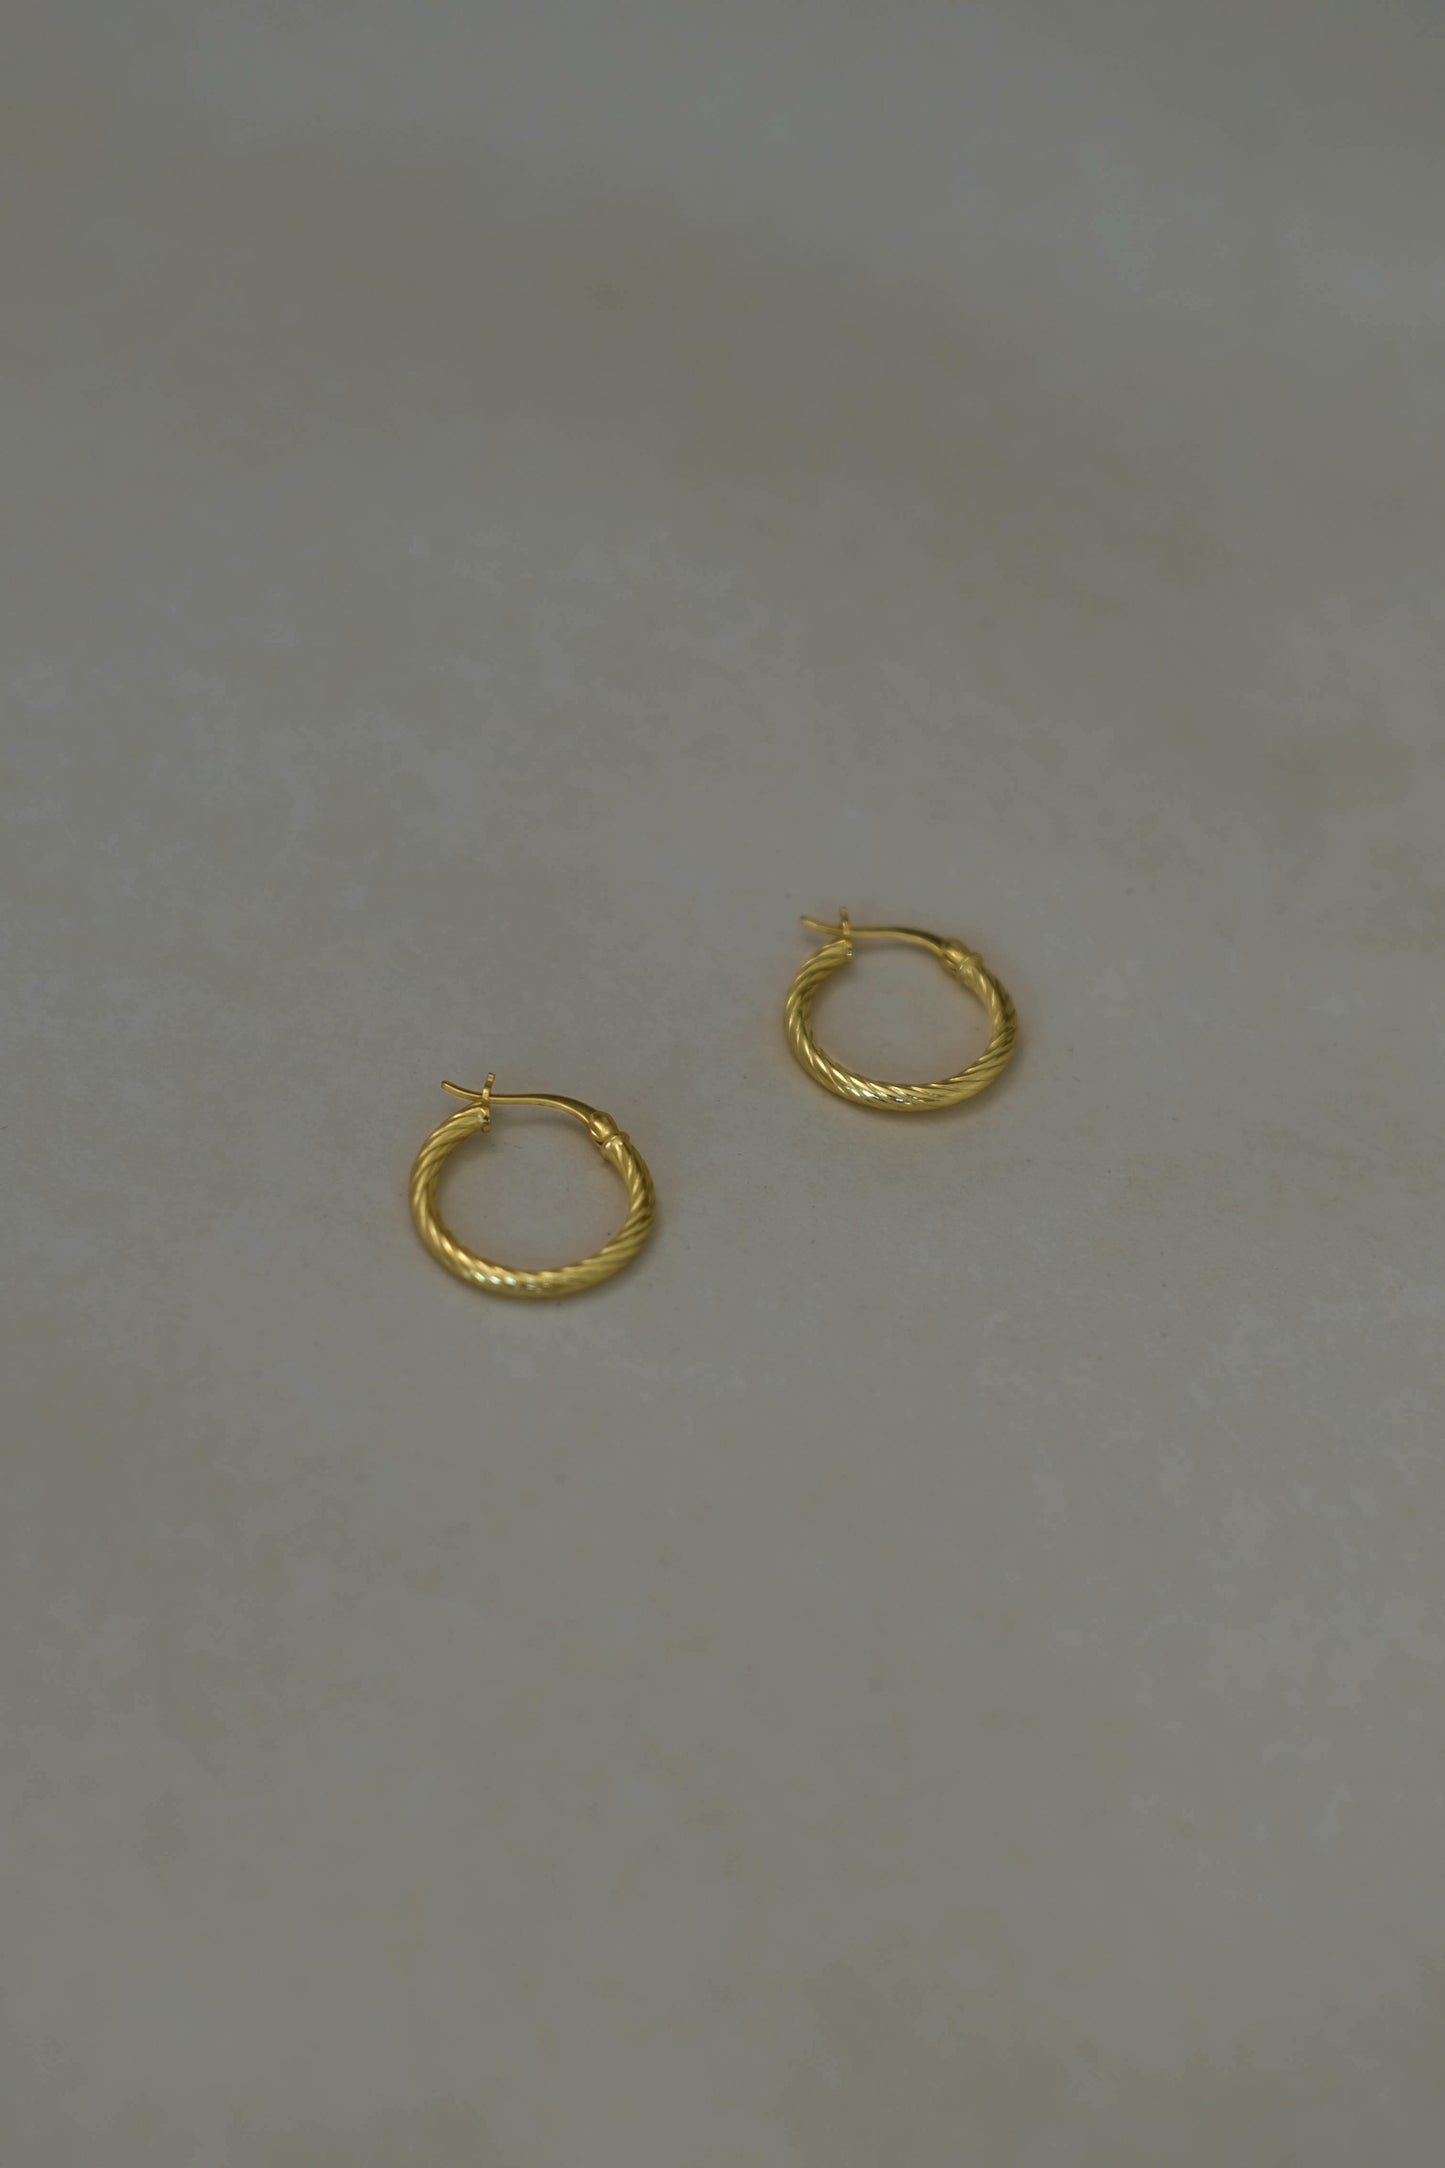 Twist earrings in Gold vermeil